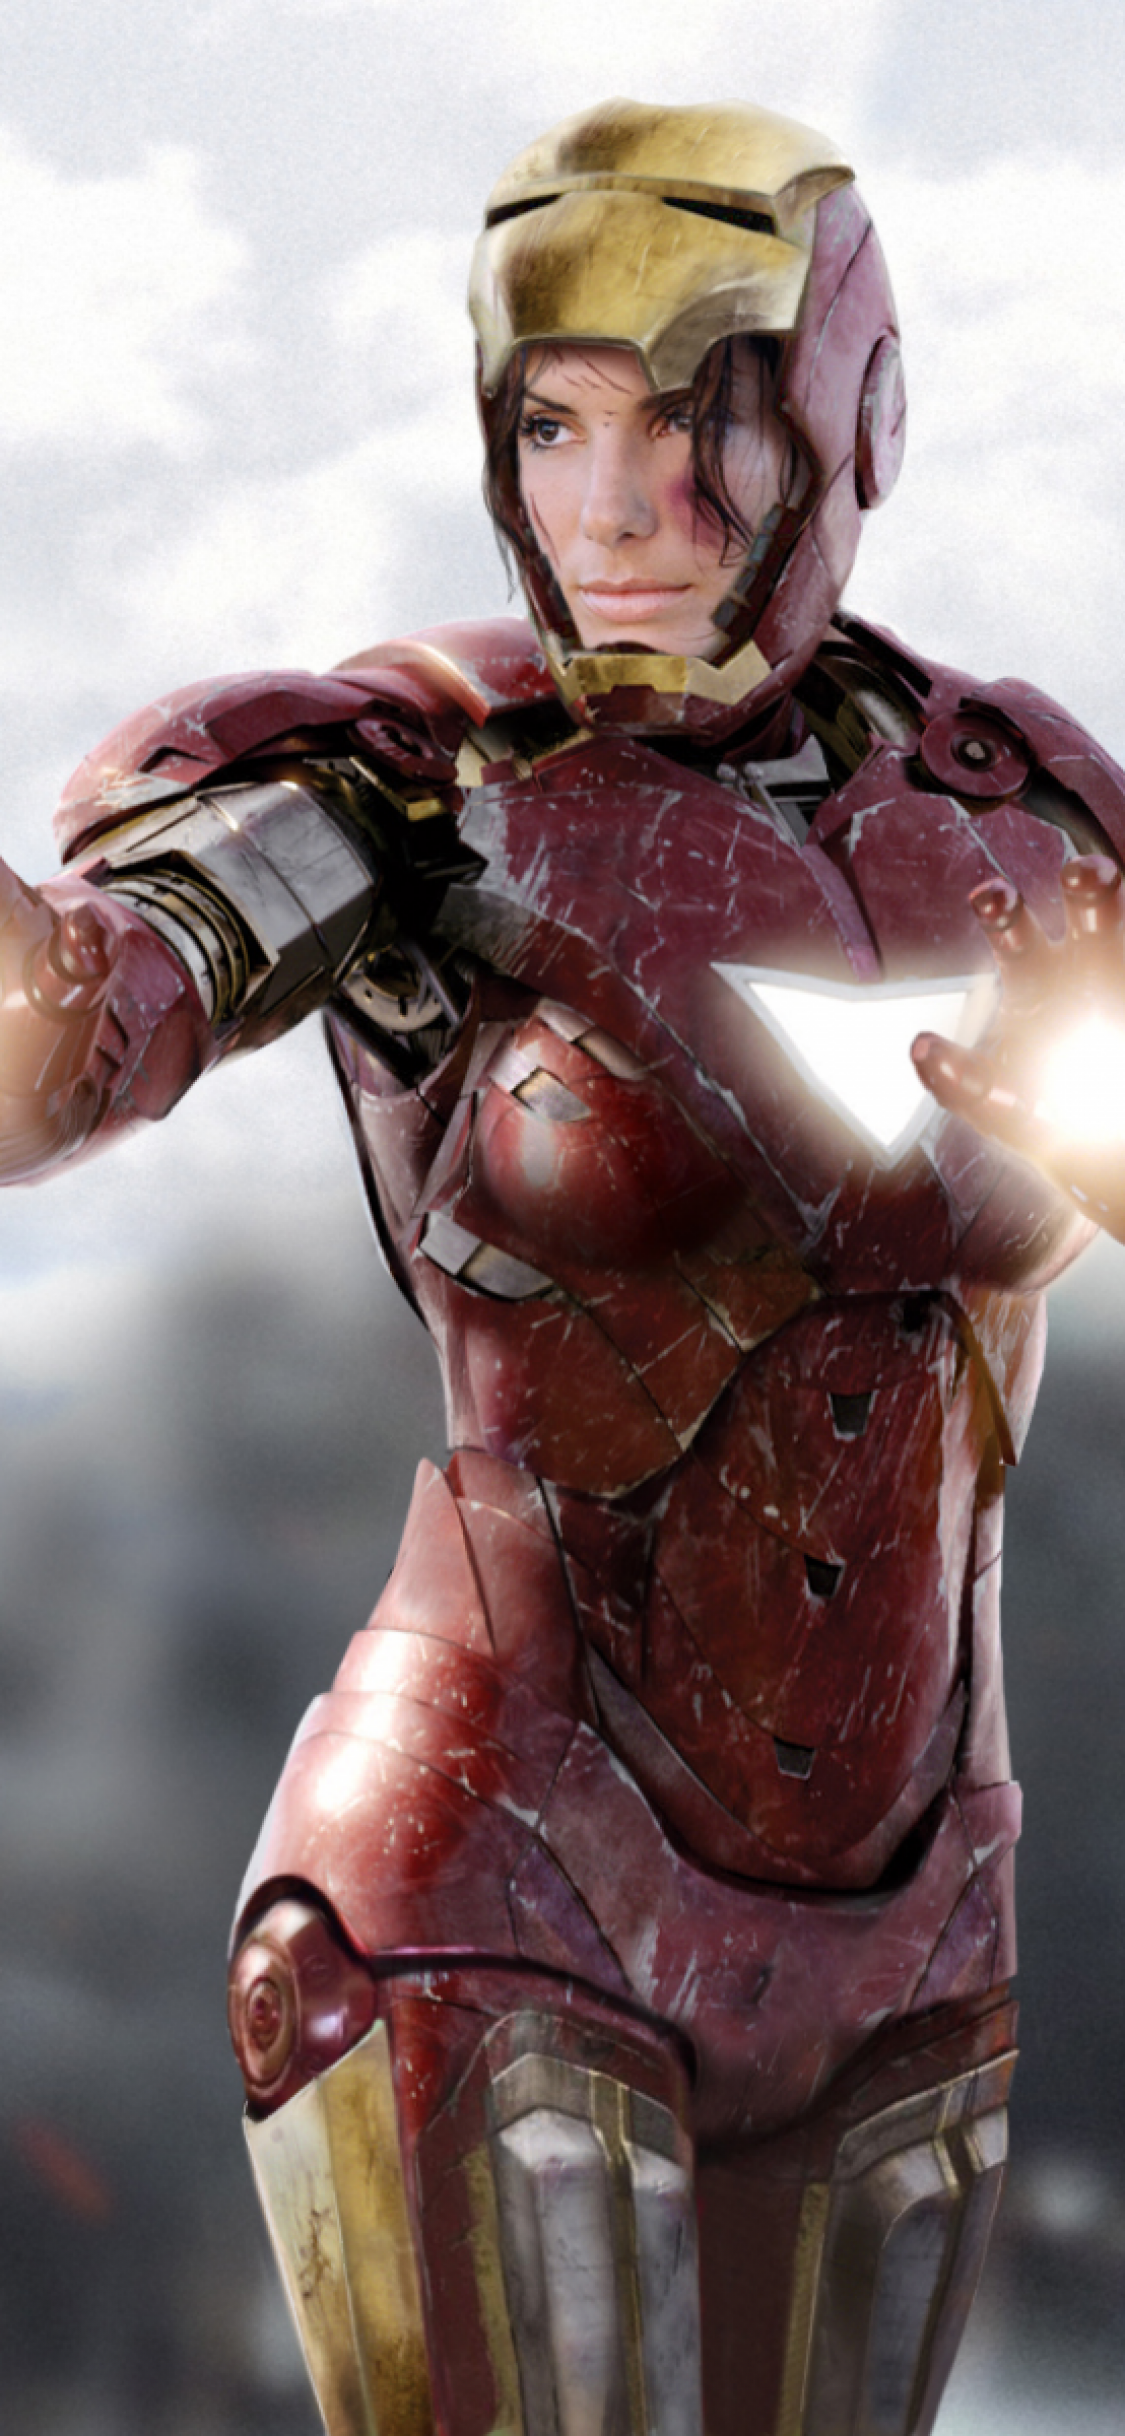 Iphone X Sandra Bullock Wallpaper - Avengers Female Iron Man - HD Wallpaper 